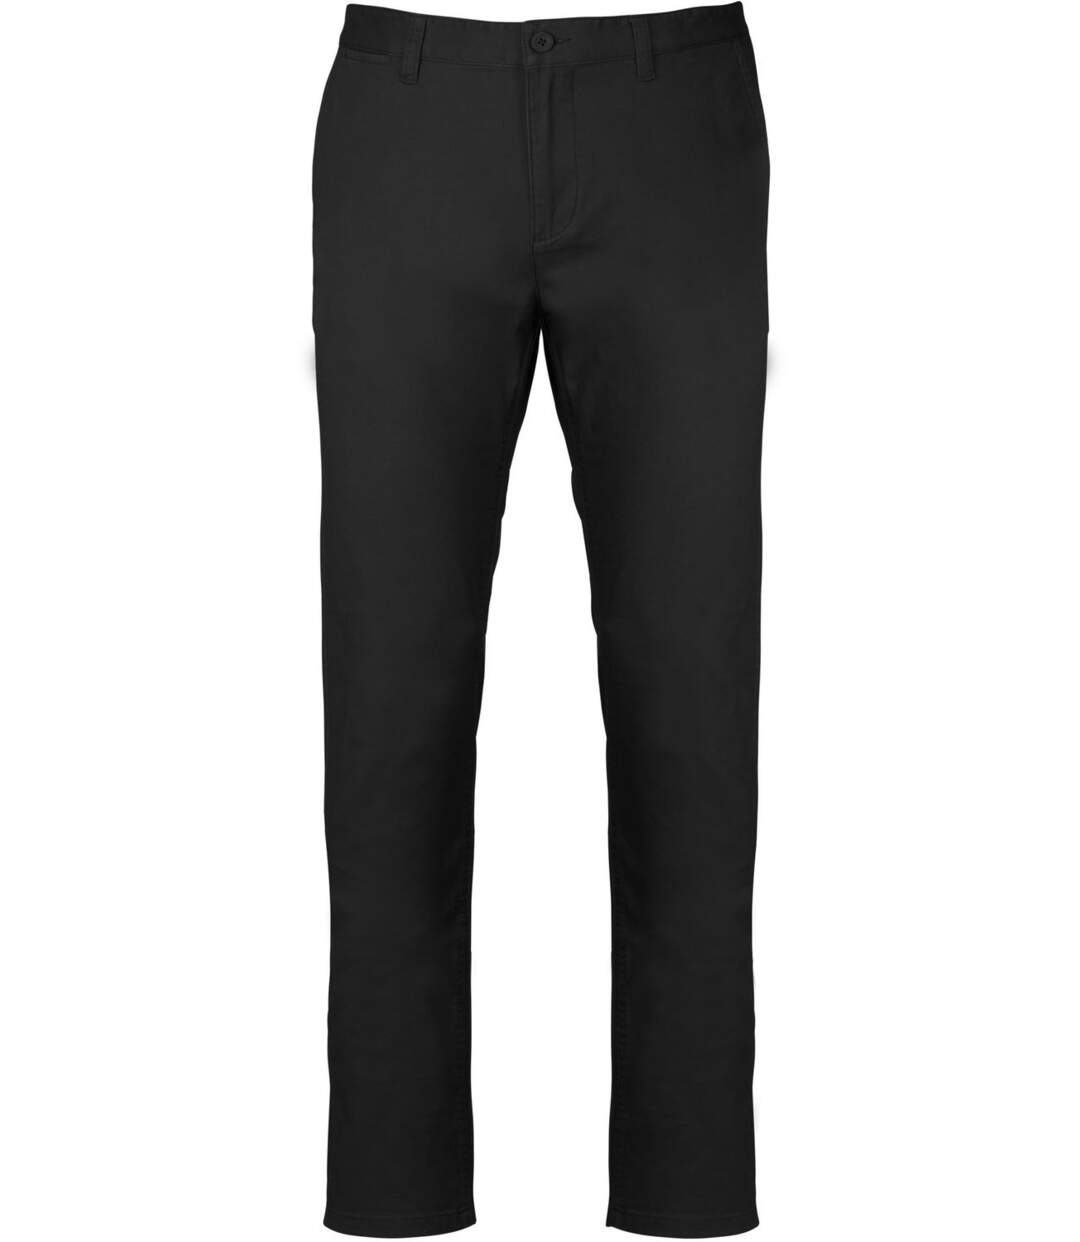 pantalon chino pour homme - K740 - noir